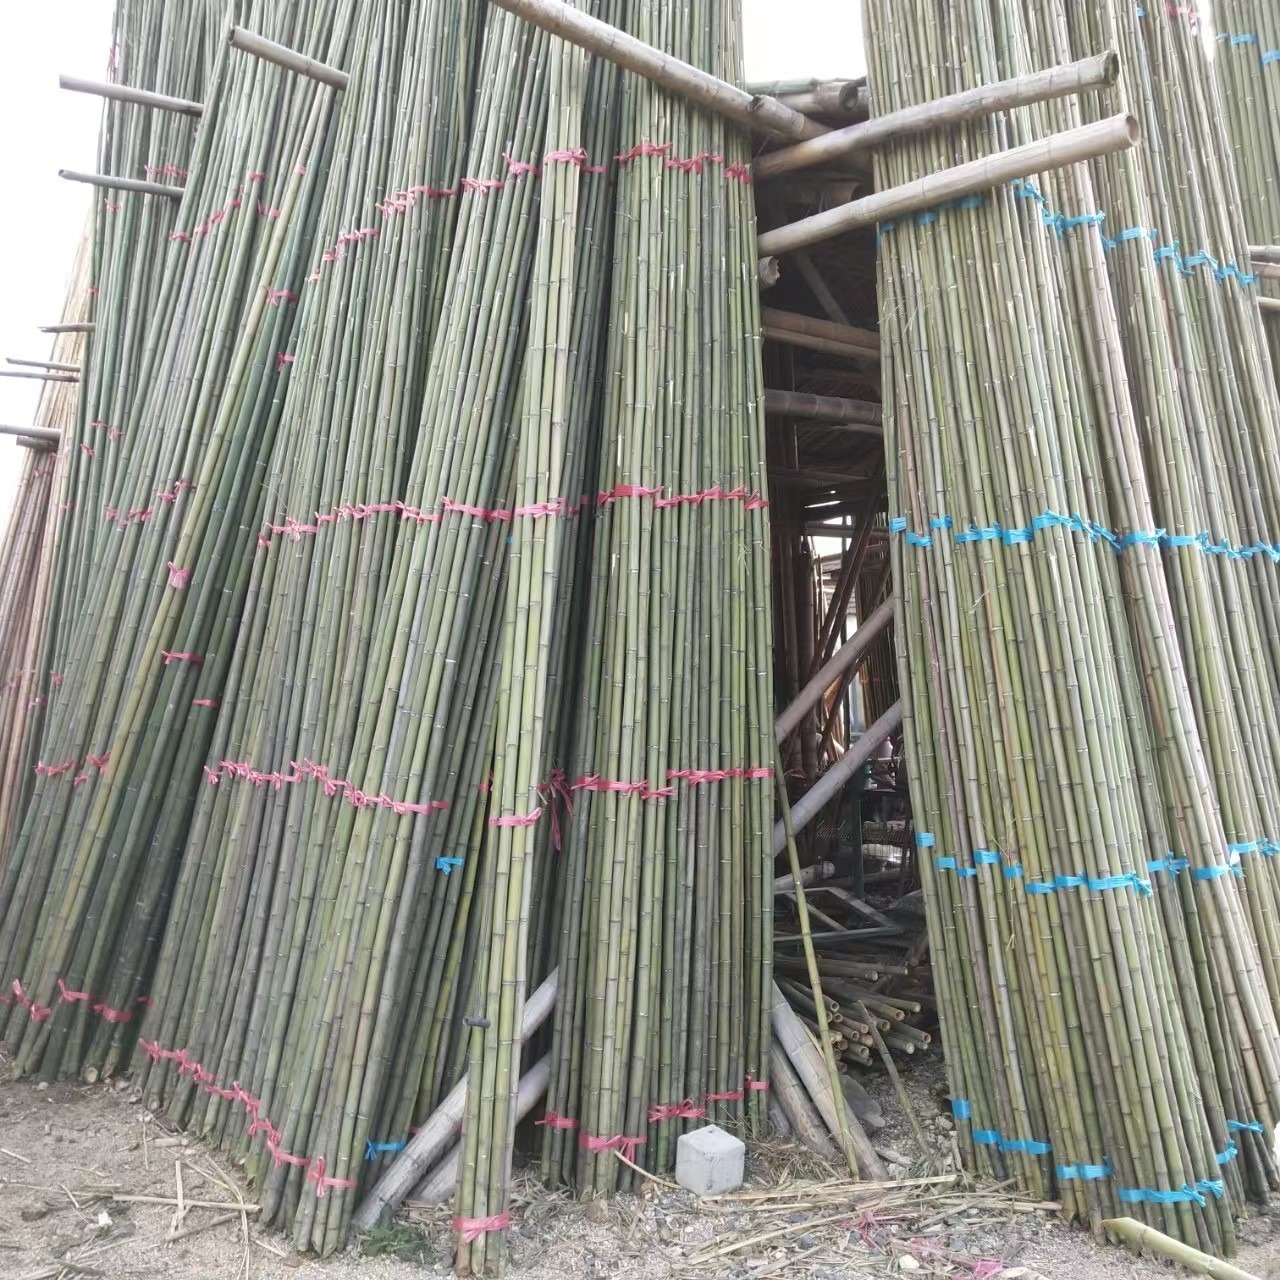 竹韵竹制品厂家大量供应7米8米9米大棚竹竿 毛竹梢 菜架竹 早元竹等各种竹类品种多多